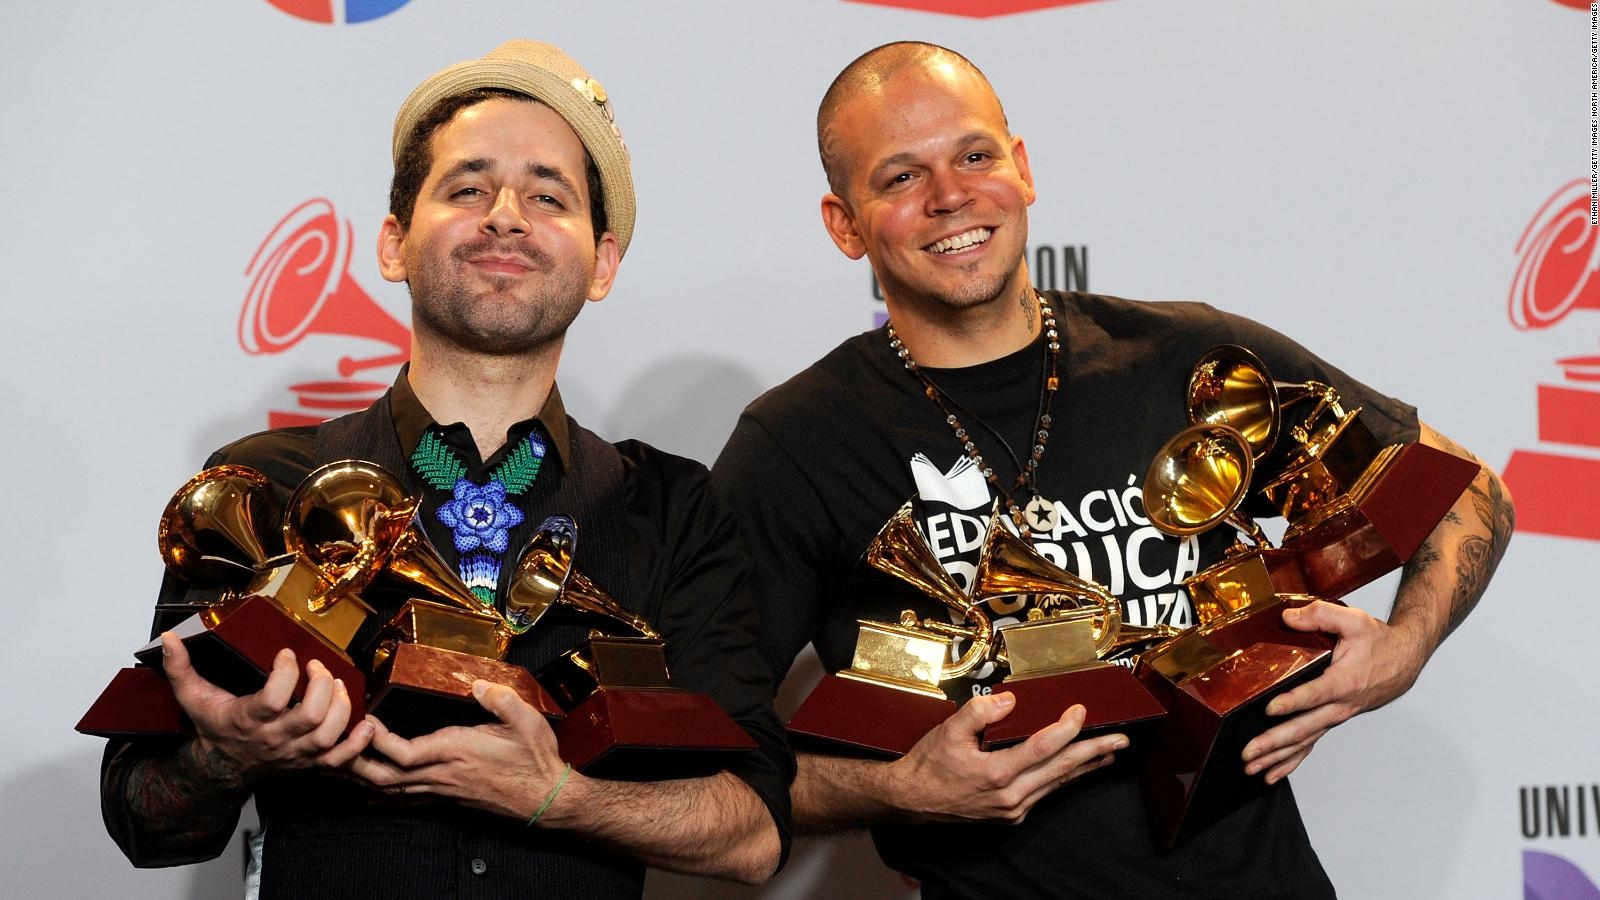 Los Latin Grammy dan de qué hablar - Los Latin Grammy dan de qué hablar